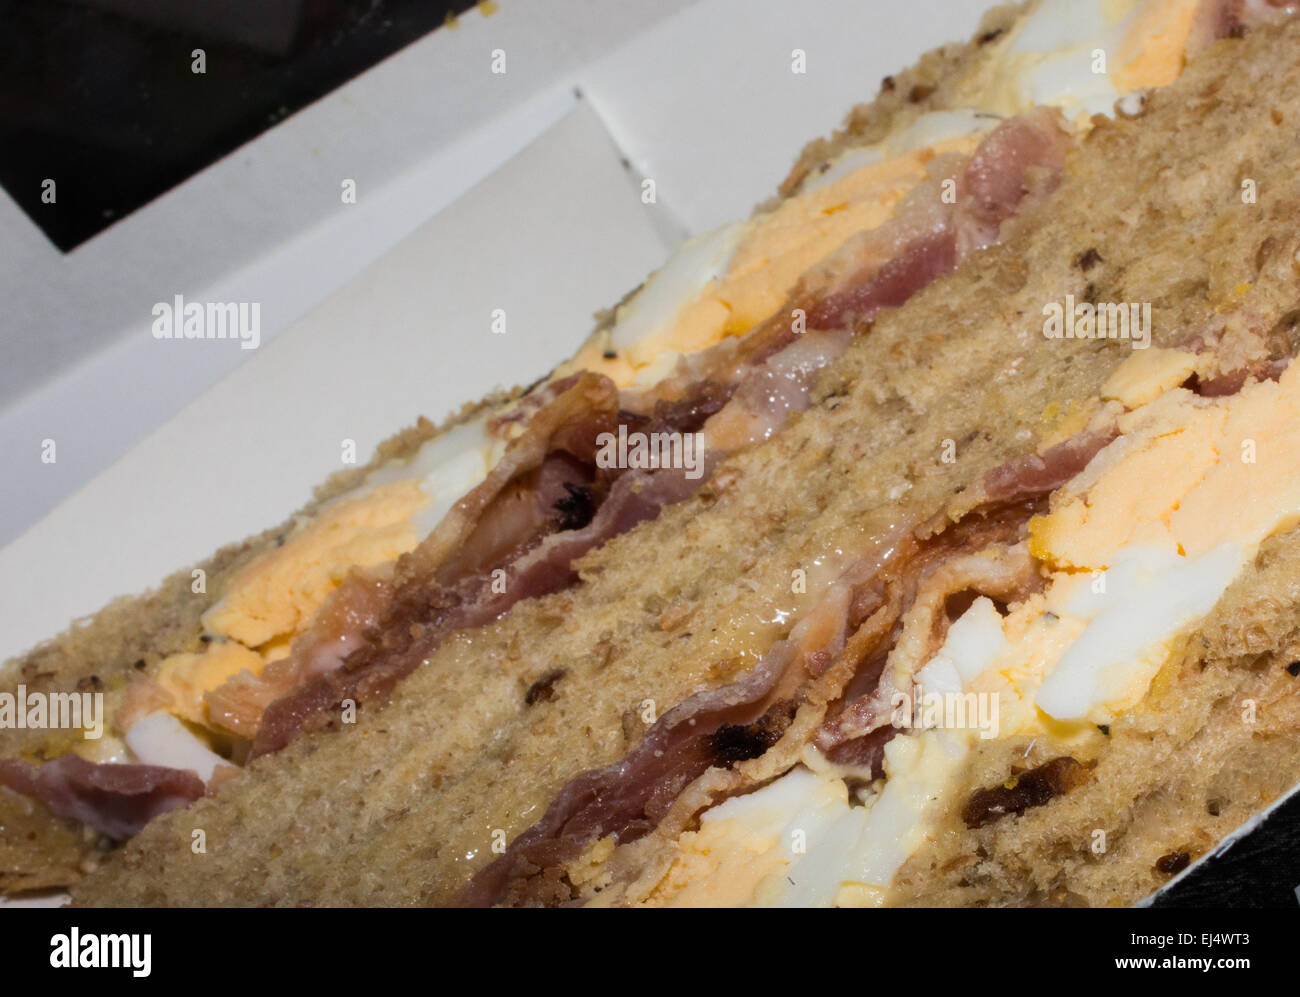 Shop comprato uova e bacon in sandwich di pane integrale, uneaten e ancora in imballaggi di cartone ma aperto. Foto Stock